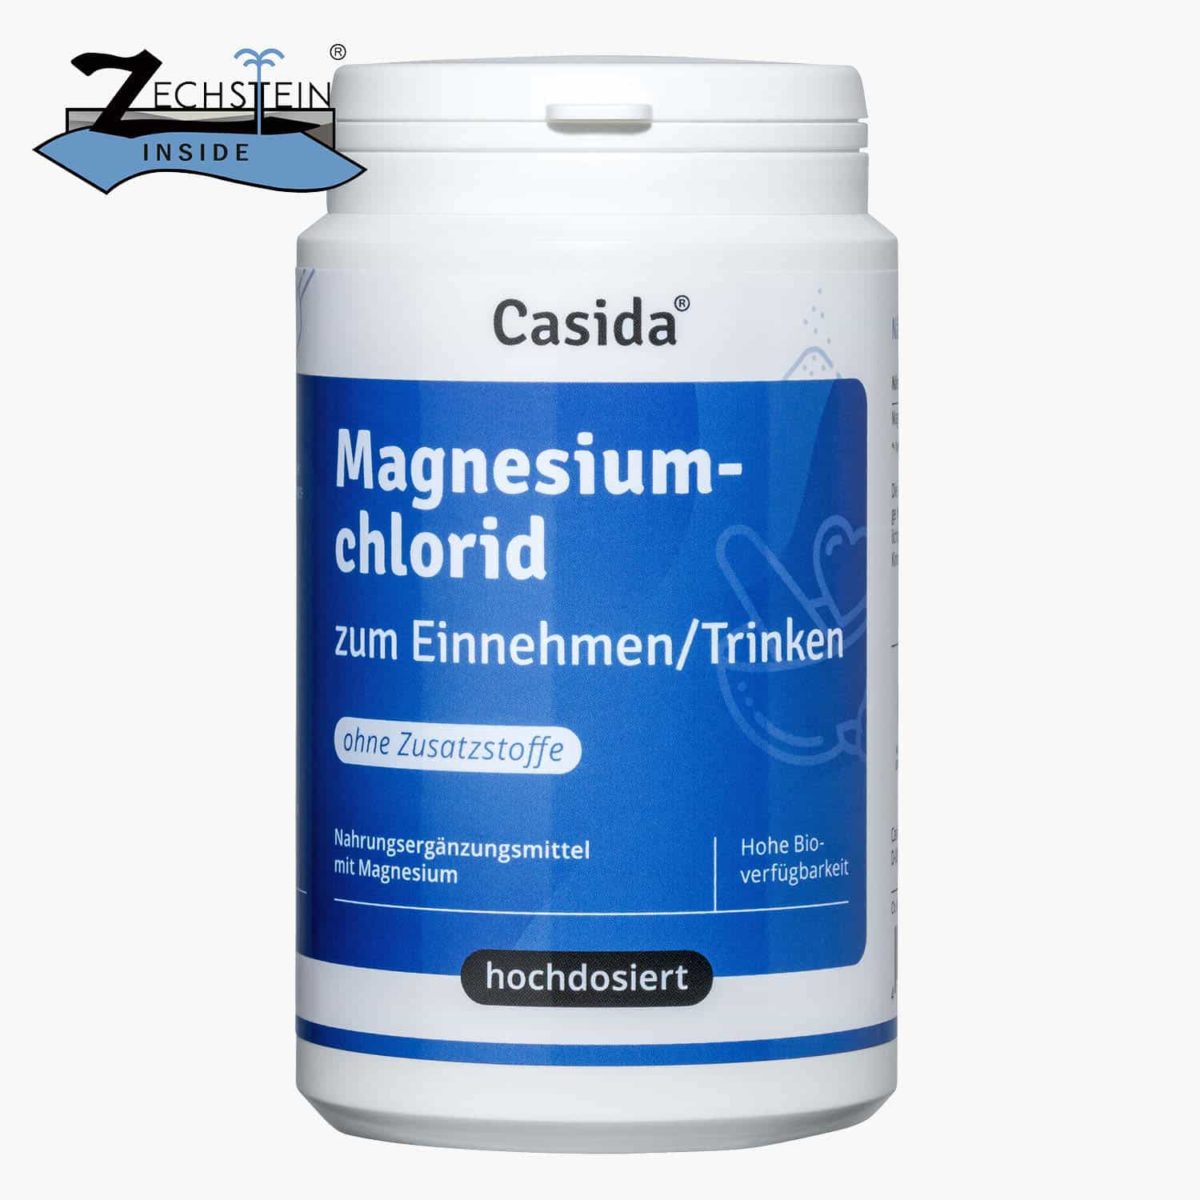 Casida Magnesiumchlorid zum Einnehmen 210 g PZN DE 15190615 UVP 13,95 € EAN 4260518460321 Zechstein